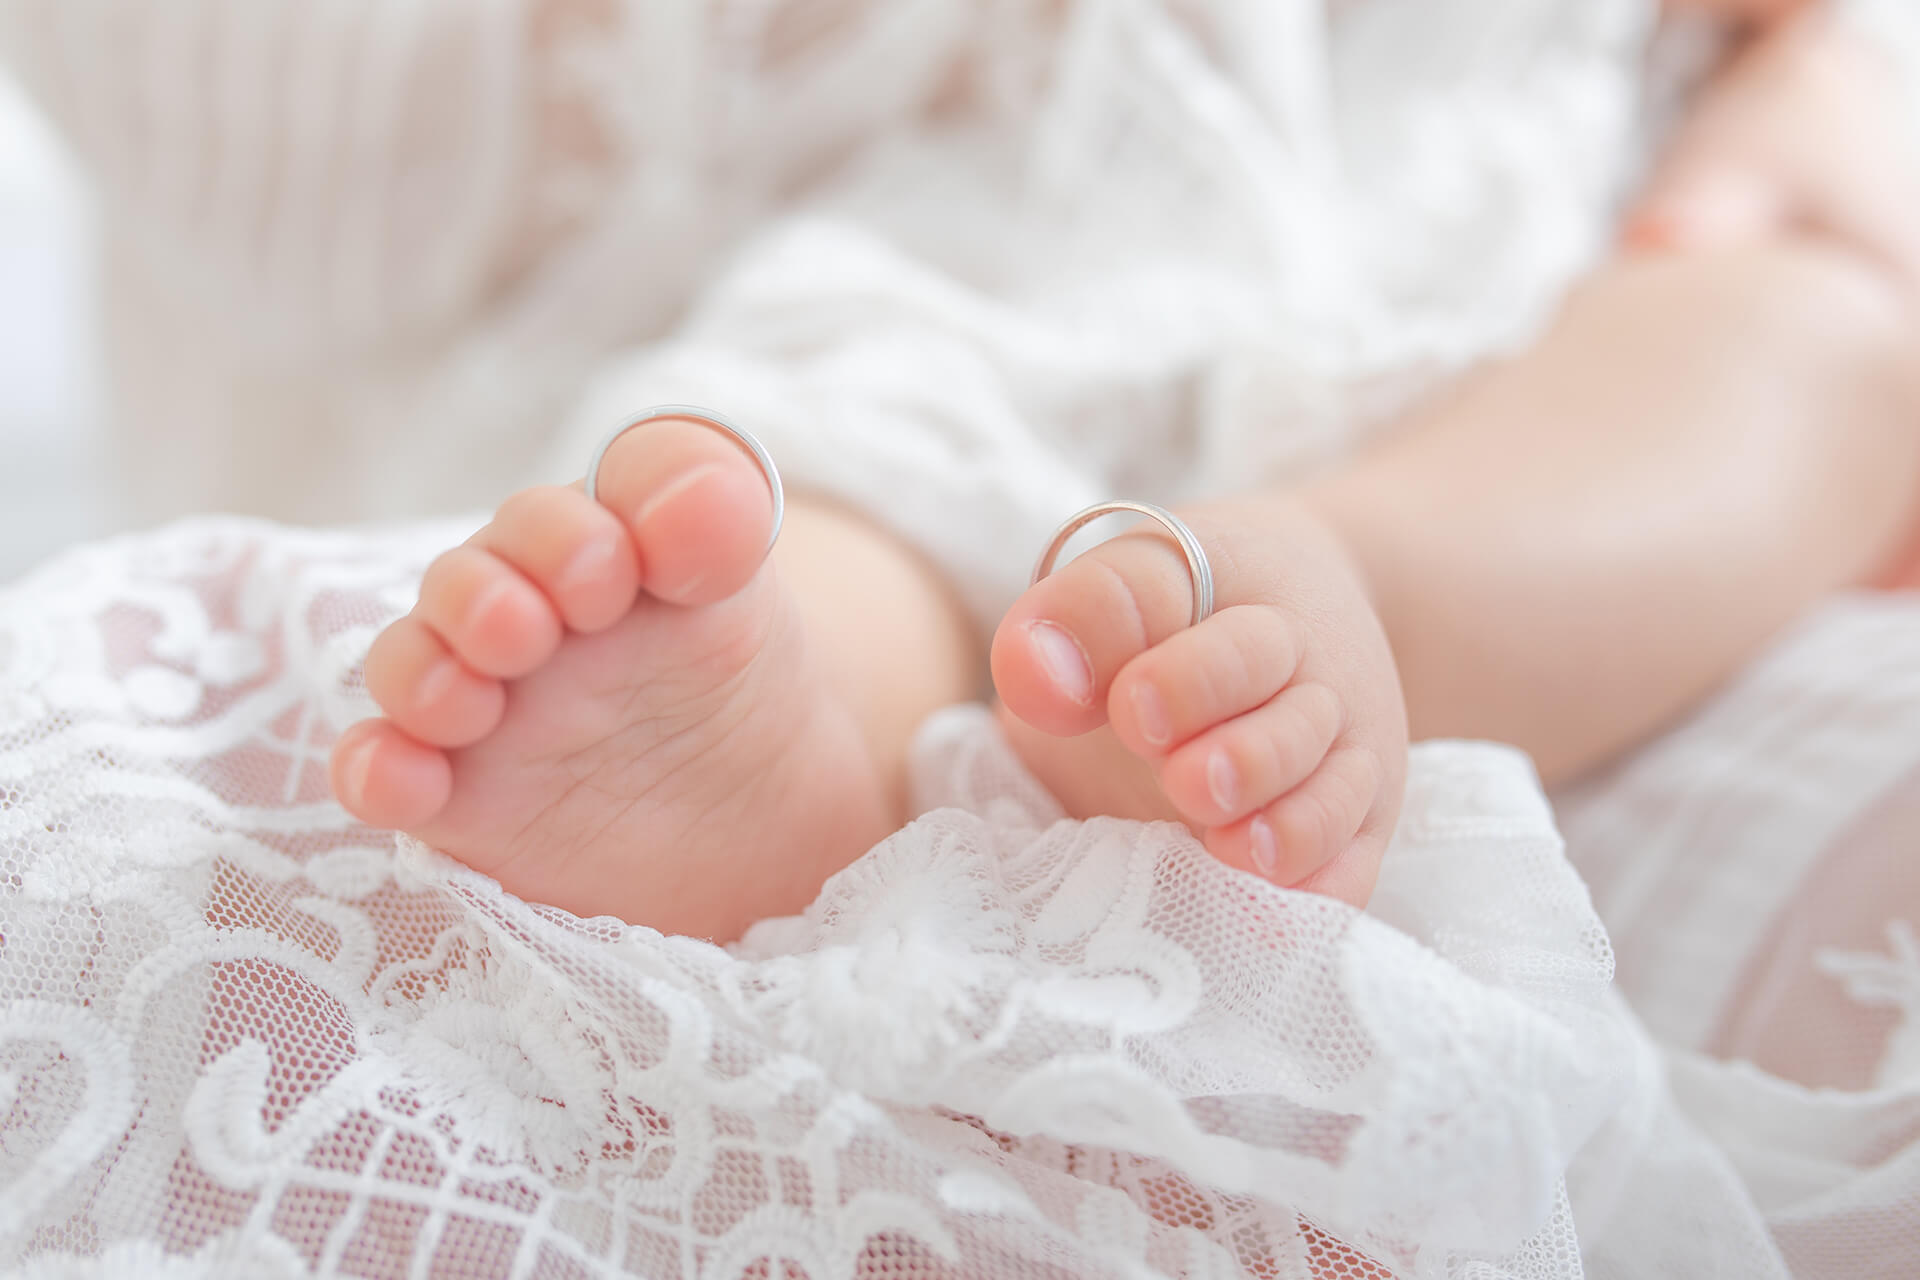 ハーフバースデー写真、赤ちゃんの足の写真